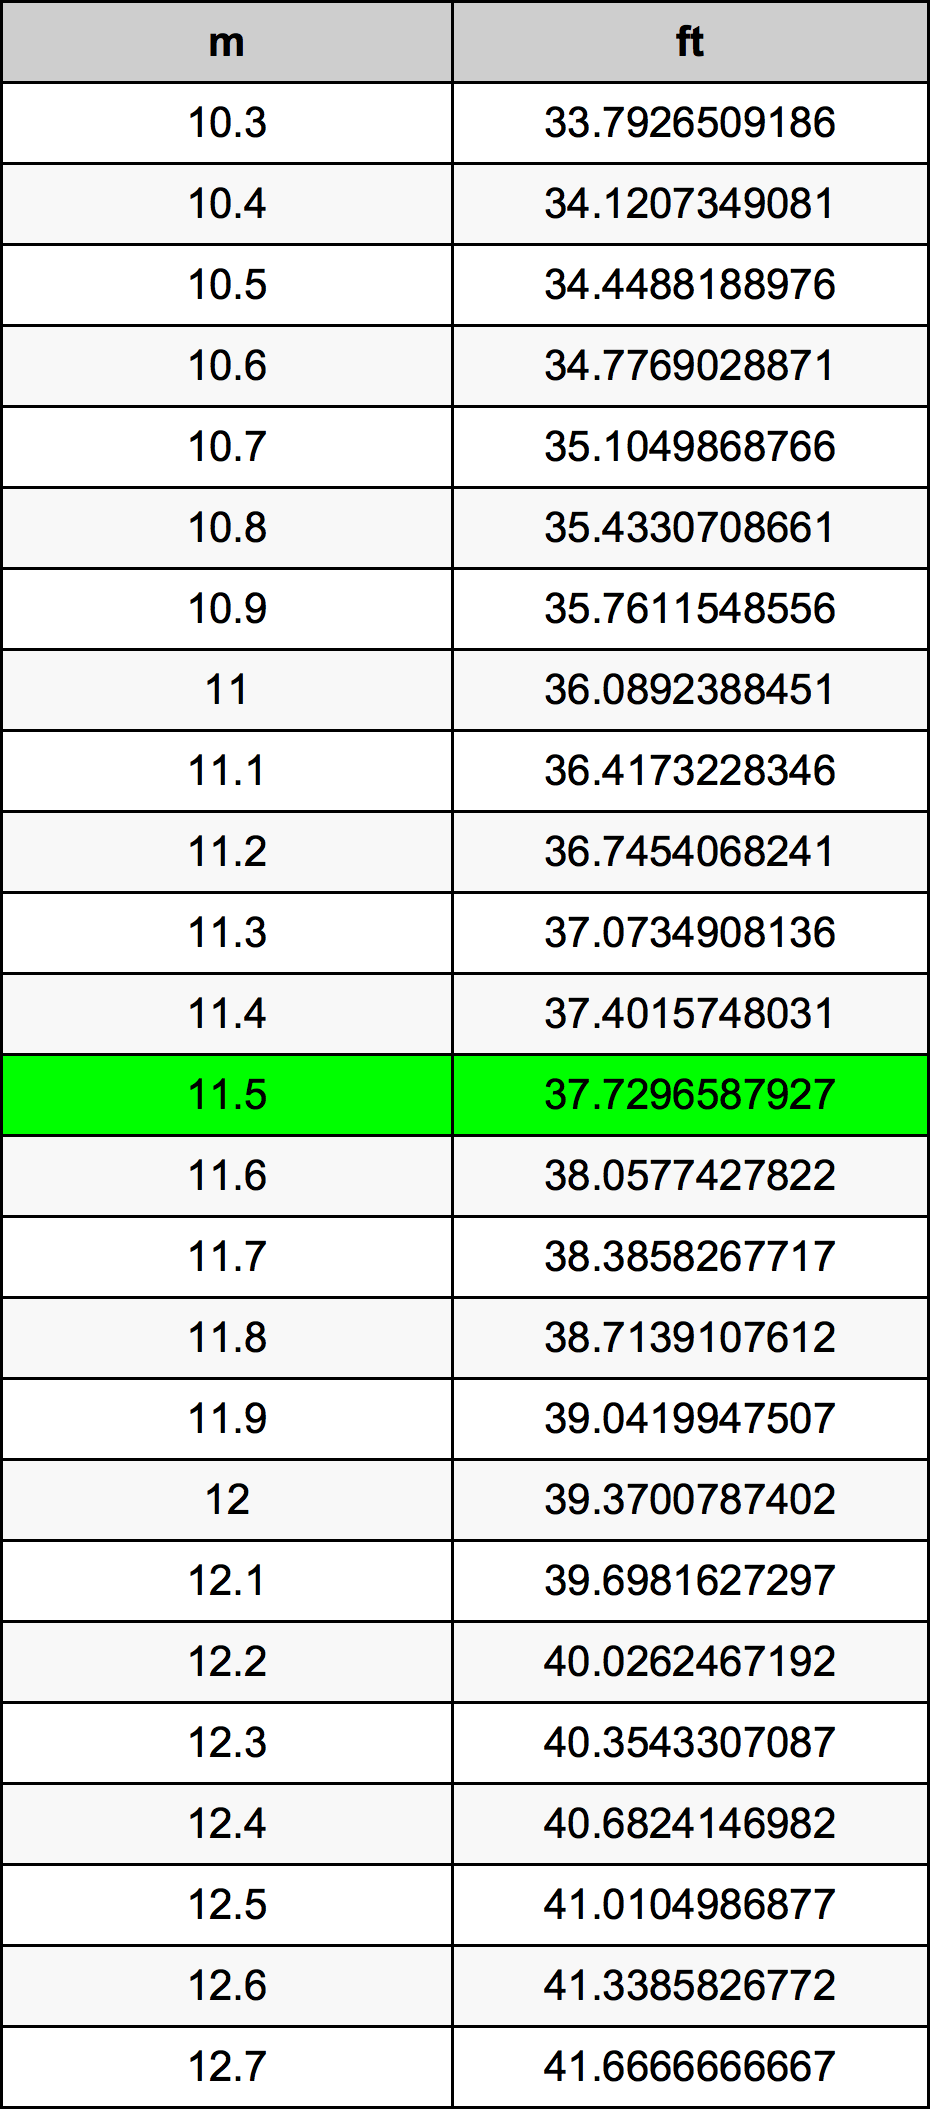 11.5 Metru tabelul de conversie